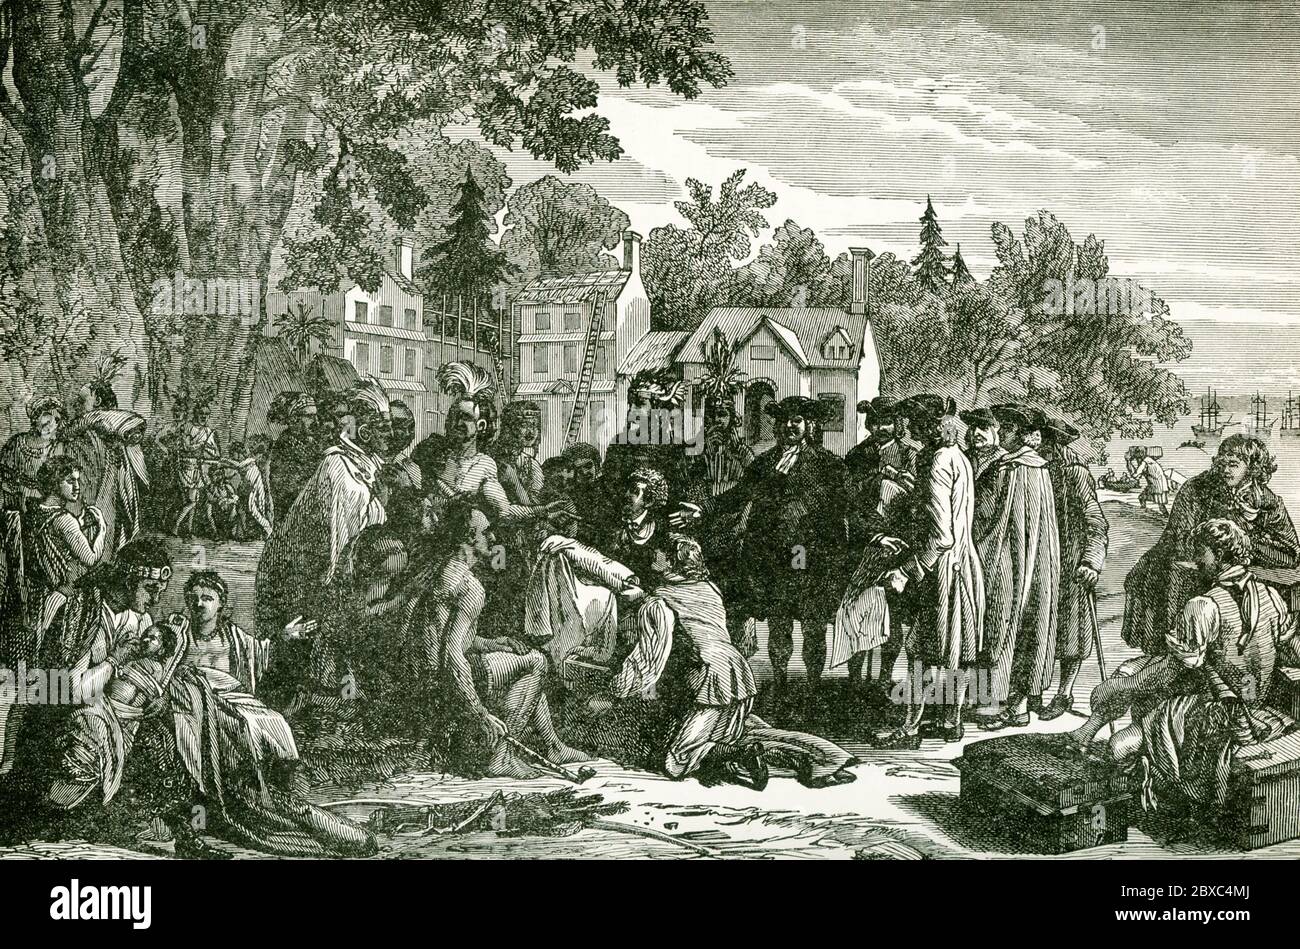 Cette illustration montre le traité de William Penn avec les Indiens. William Penn (1644-1718) fonde la province de Pennsylvanie, la colonie britannique nord-américaine qui devient l'État américain de Pennsylvanie. Penn a conclu un traité avec les Indiens (vu ici) à Shackamaxon (près de Kensington à Philadelphie) sous un arbre d'orme. Penn a choisi d'acquérir des terres pour sa colonie par le biais d'affaires plutôt que de conquête. Il a payé aux Indiens 1200 livres pour leur terre en vertu du traité, un montant jugé juste. Banque D'Images